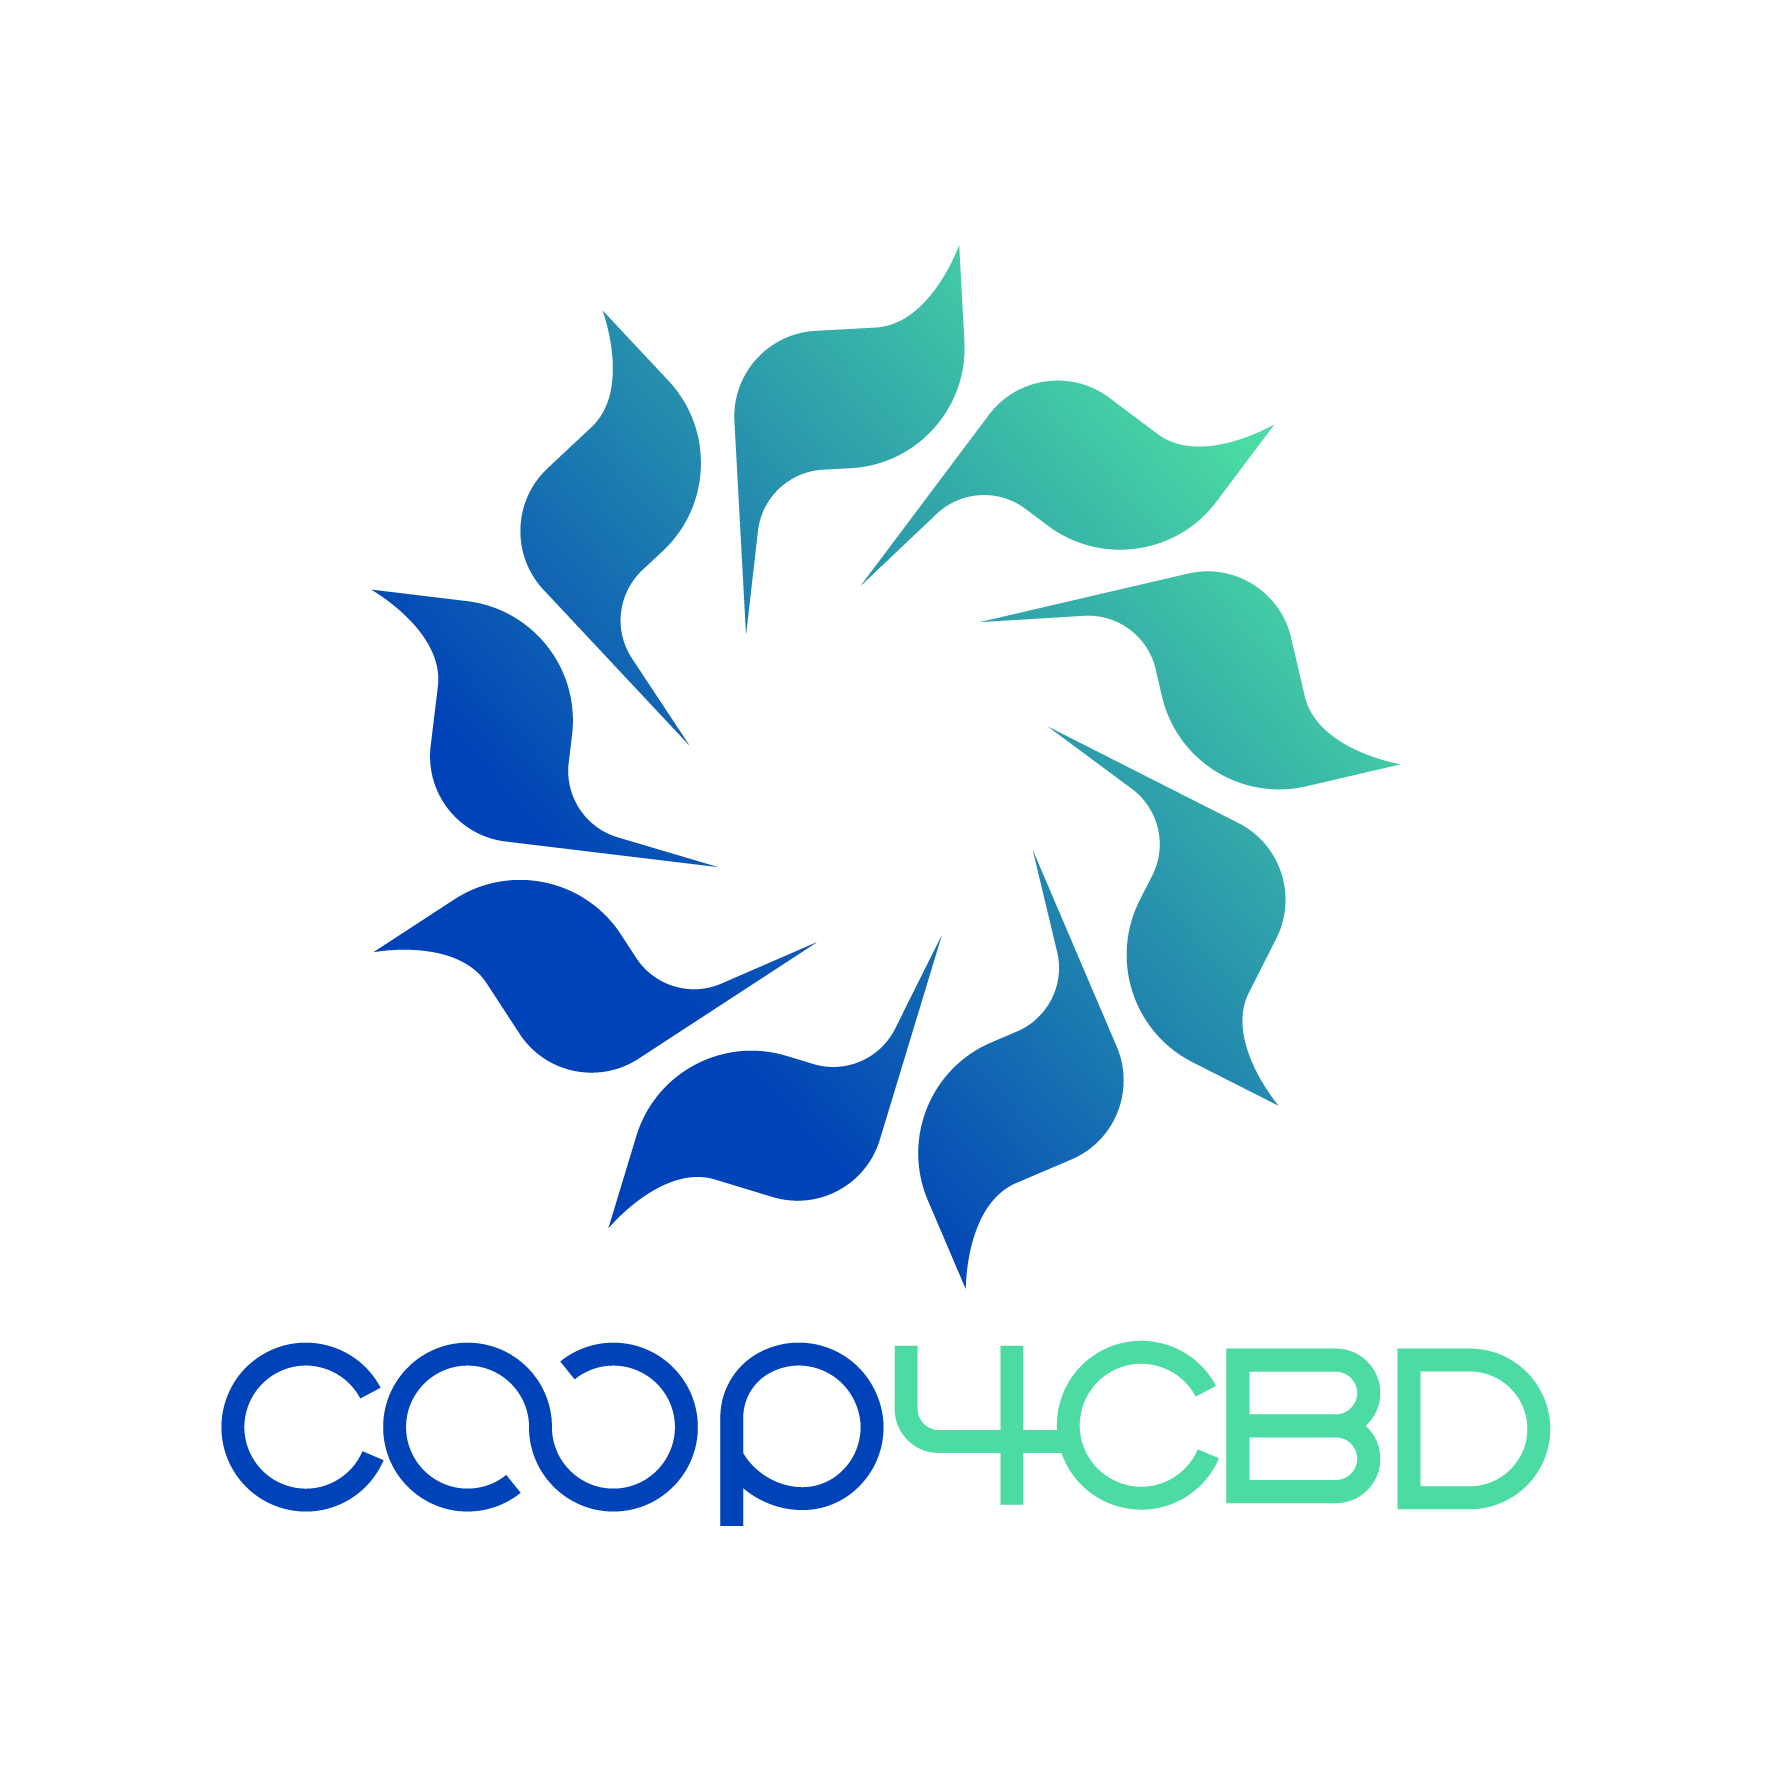 [Appel à experts] Rejoignez Co-op4CBD pour contribuer à la mise en œuvre de la CDB aux niveaux national et régional